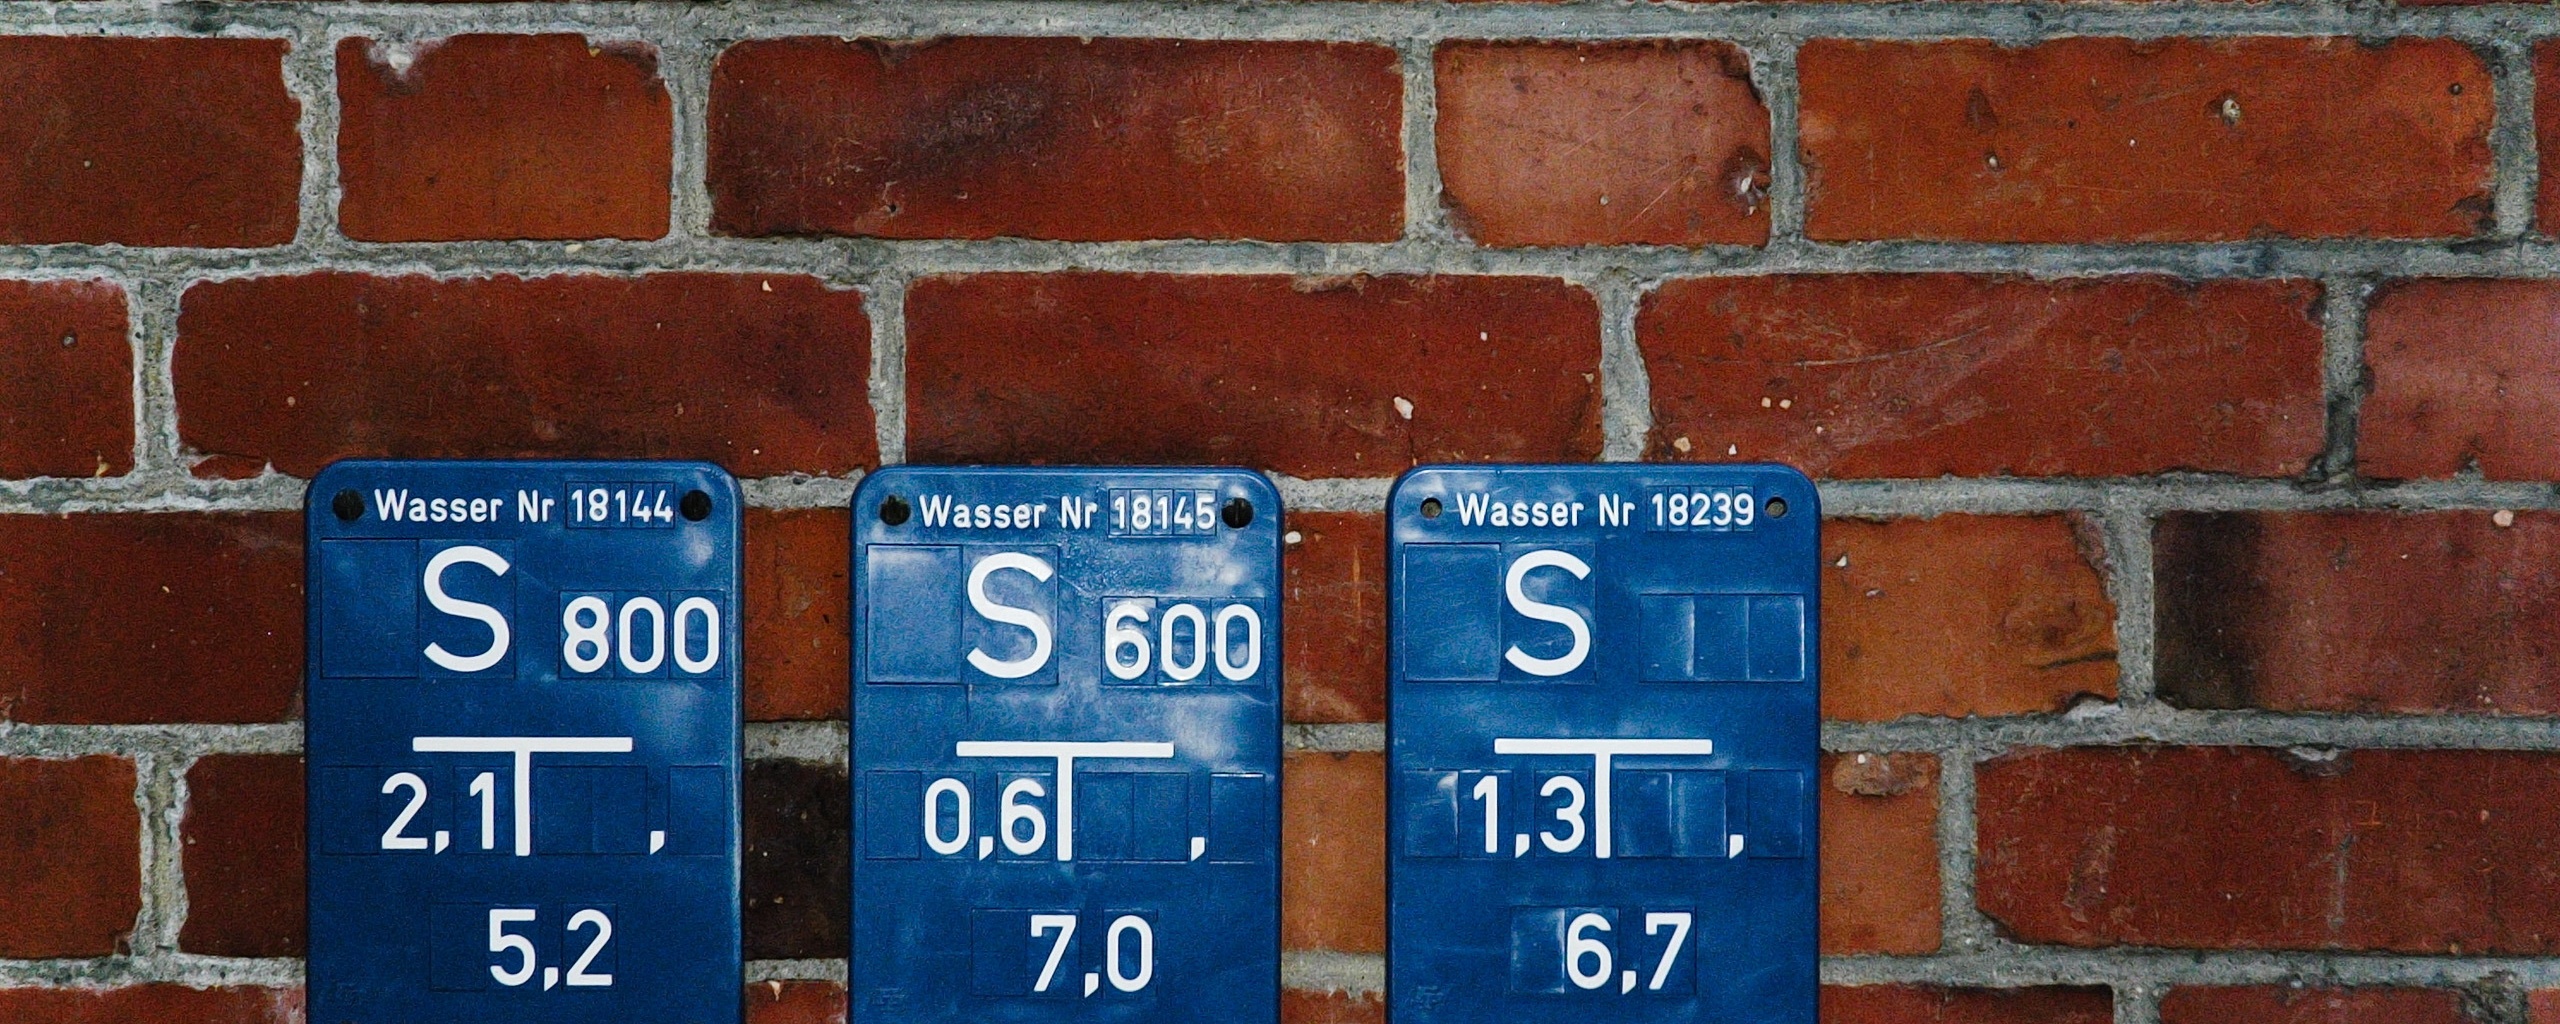 Стена с обозначениями обои